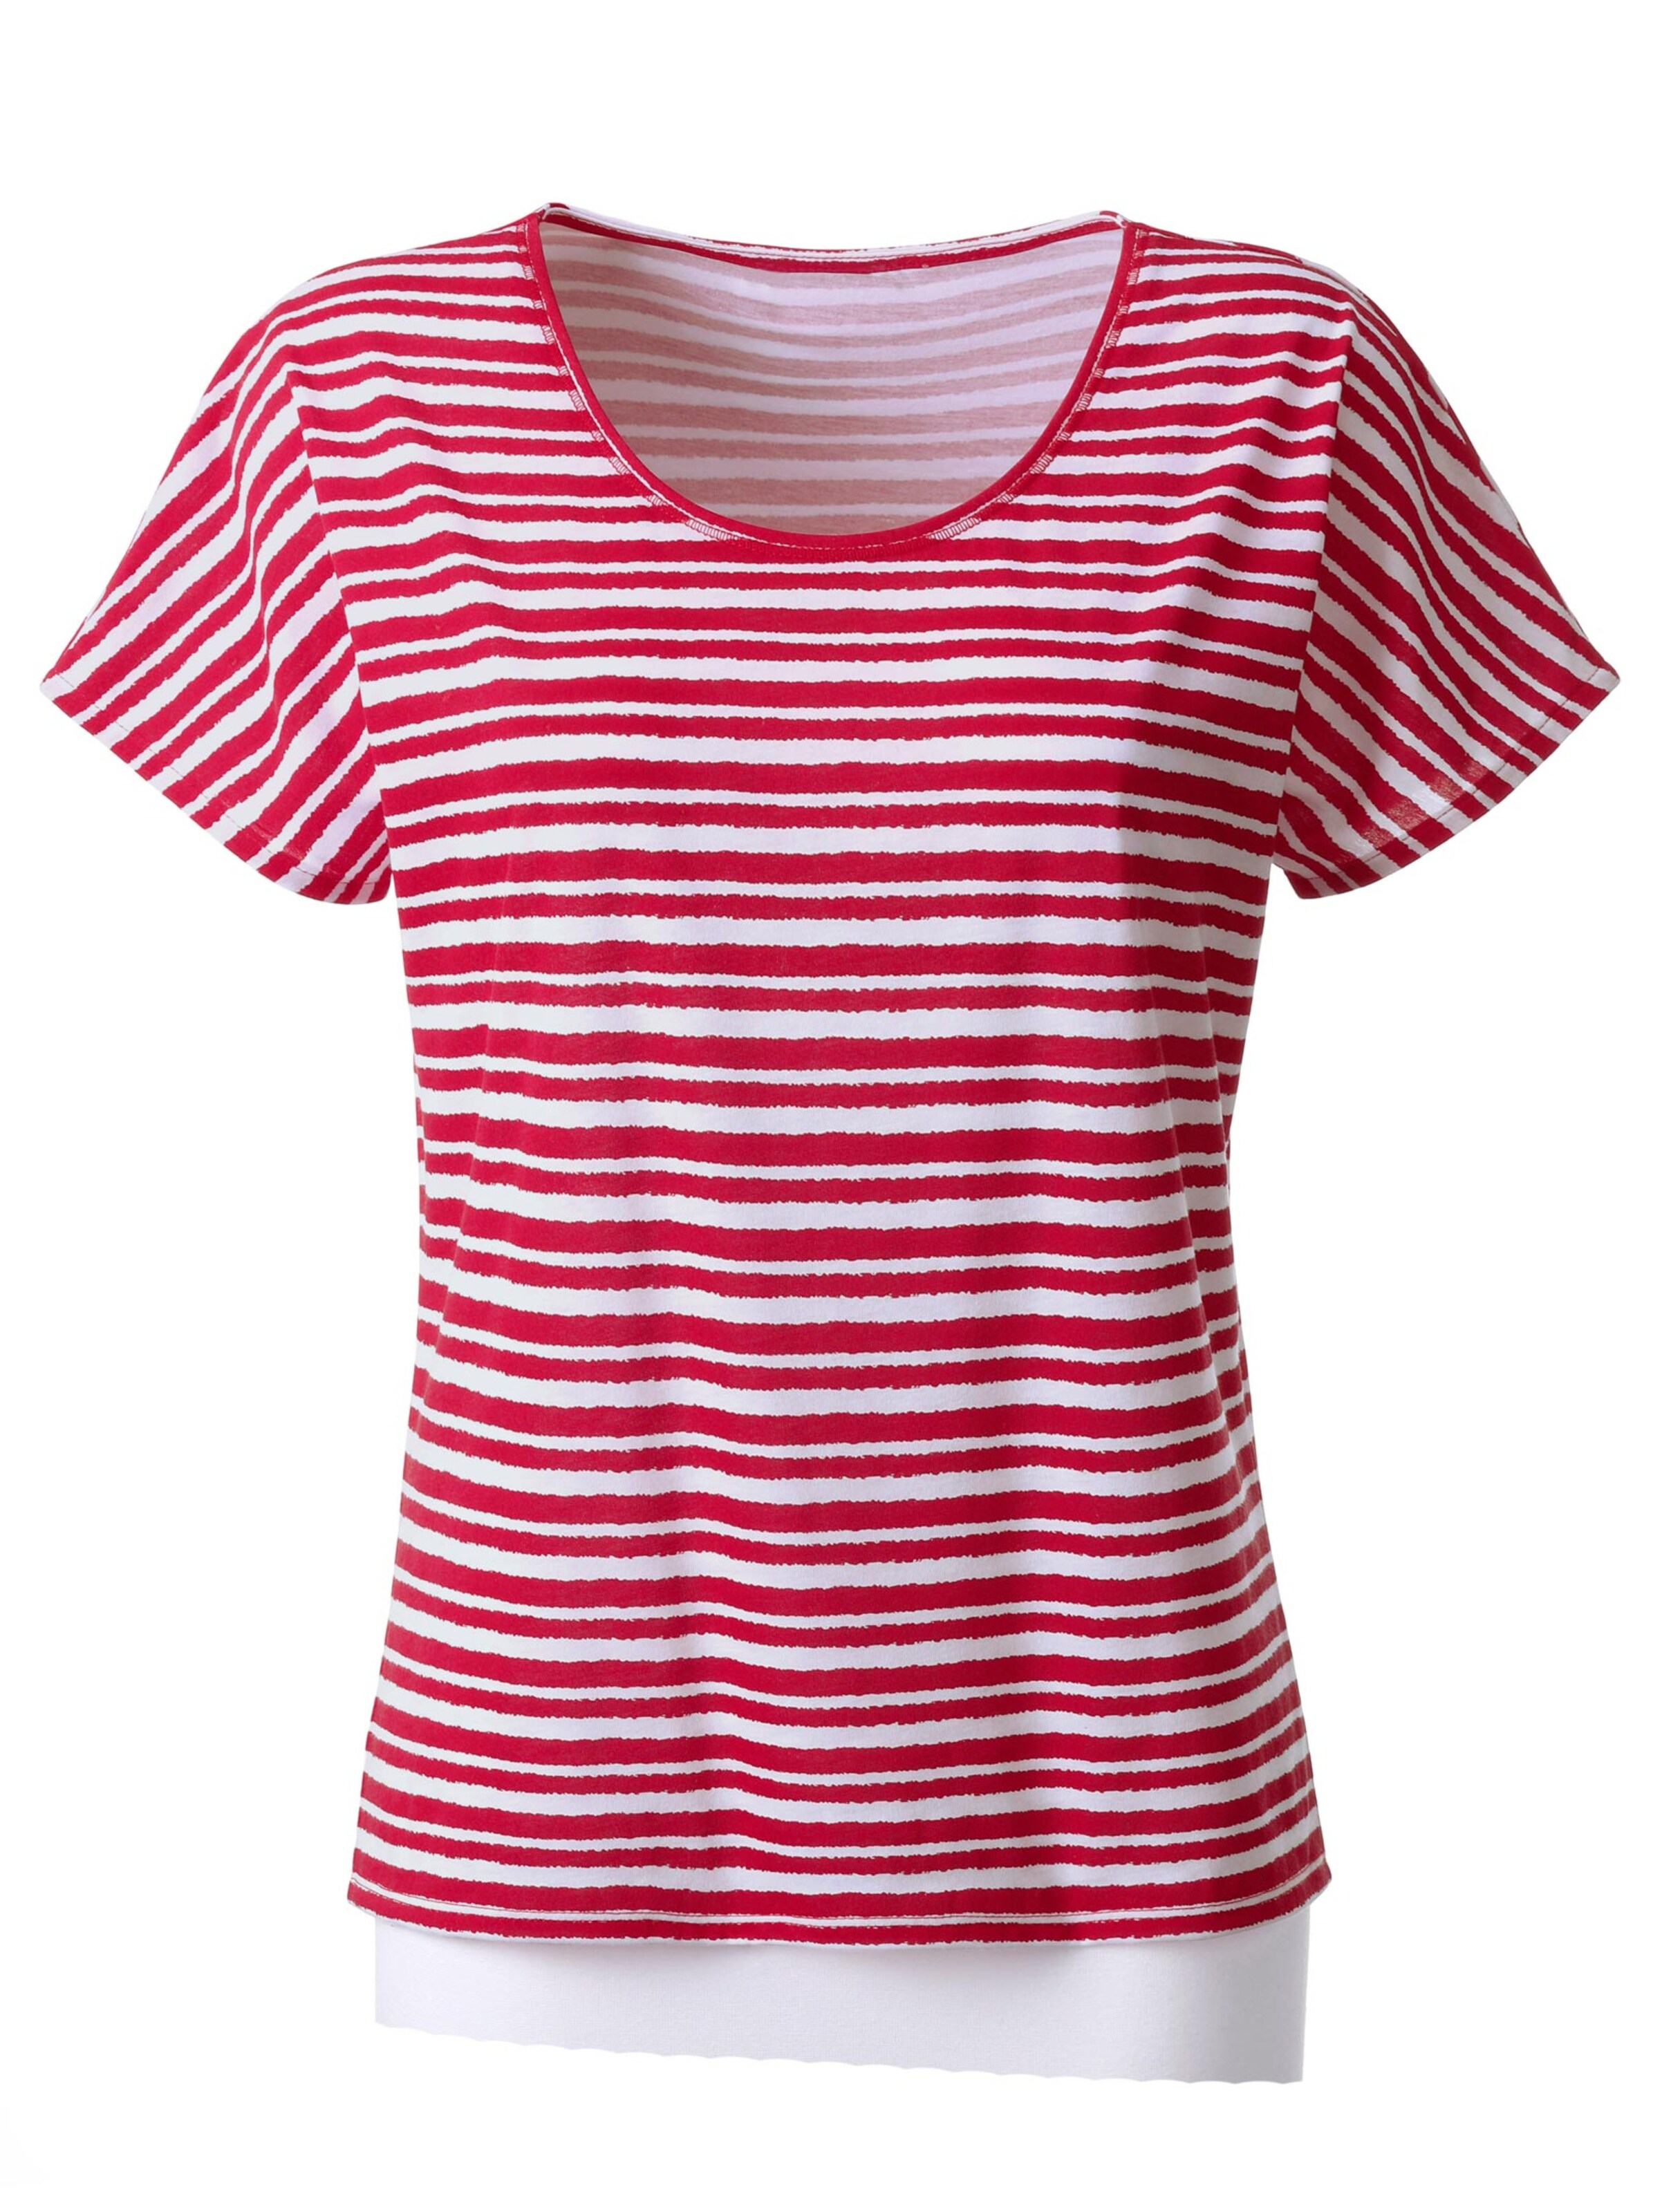 Damenmode Shirts T-Shirt in rot-gestreift 